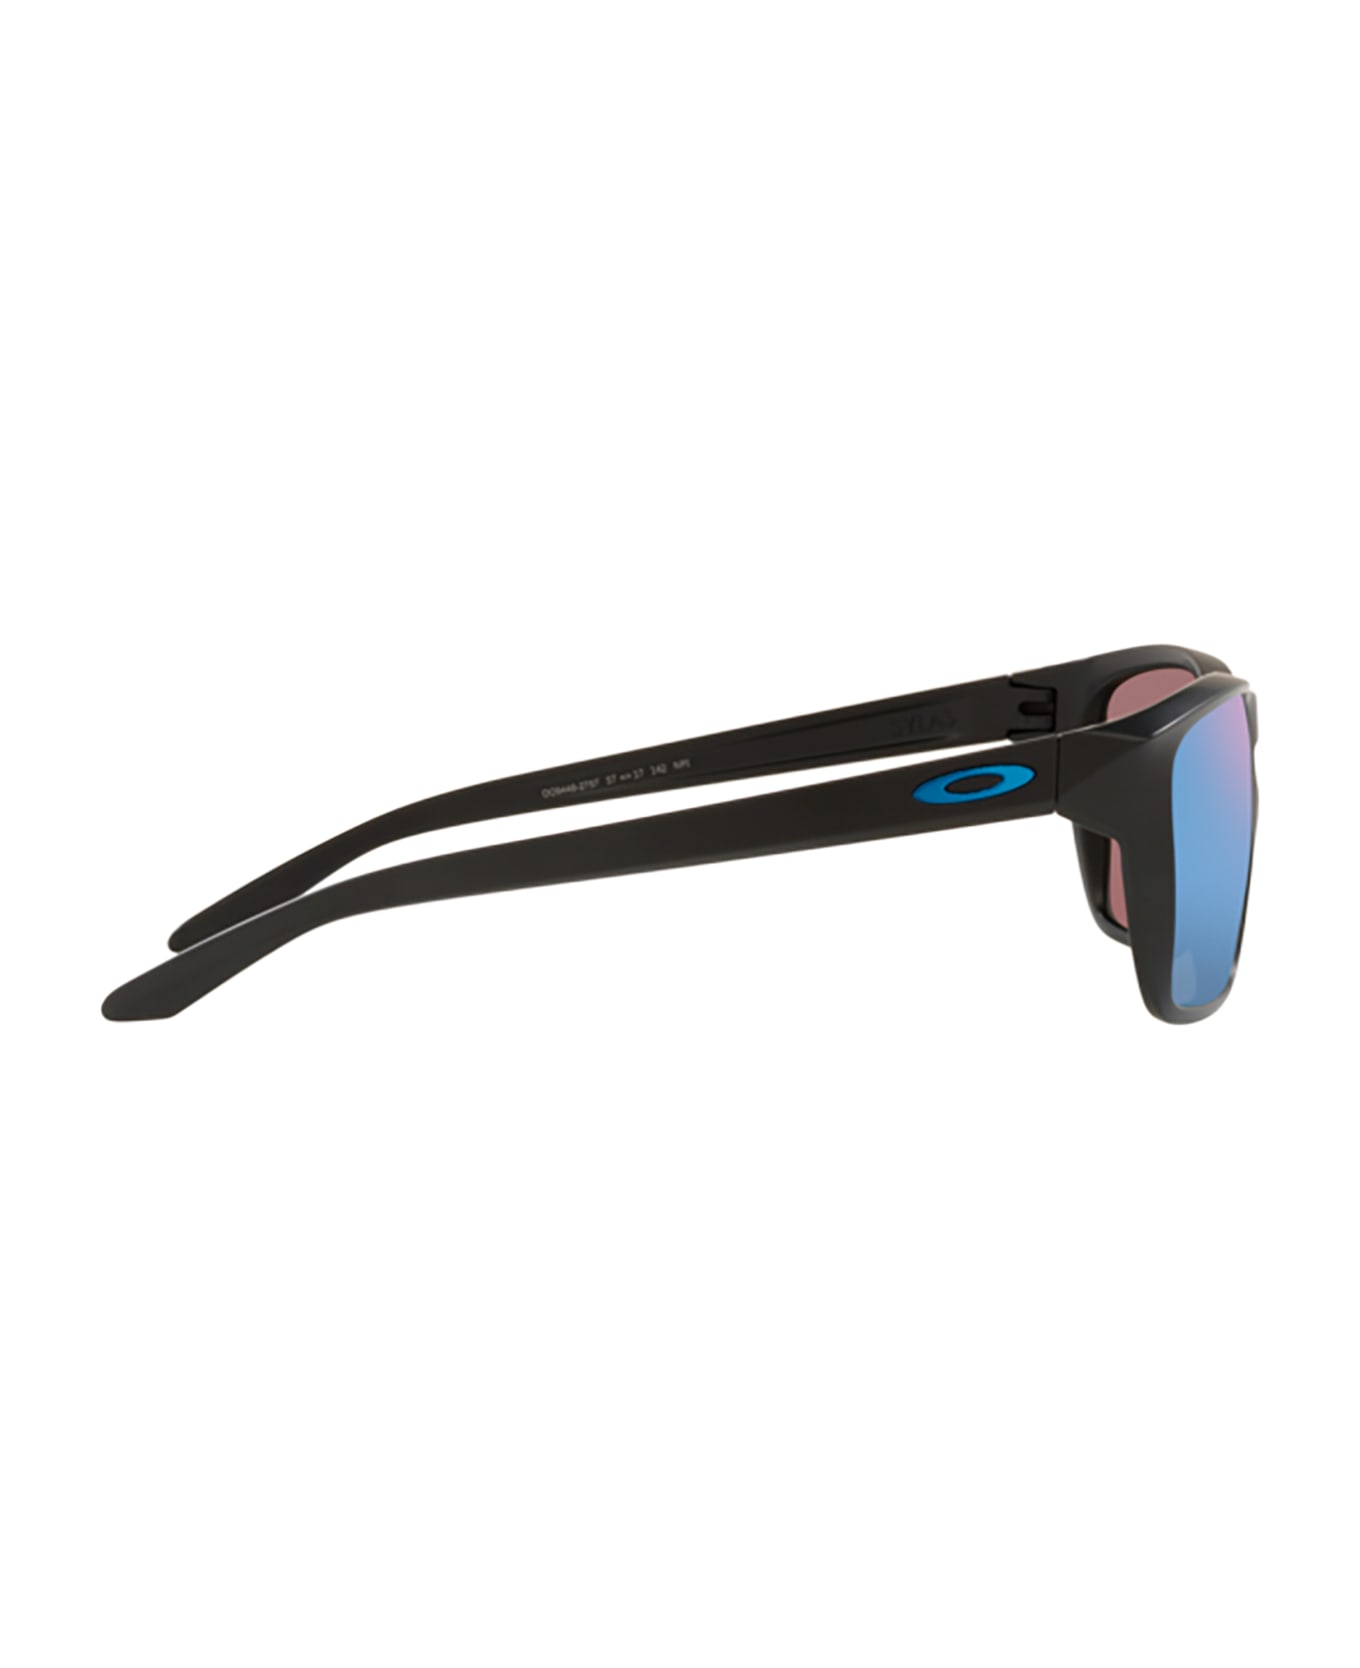 Oakley Oo9448 Matte Black Sunglasses - Matte black